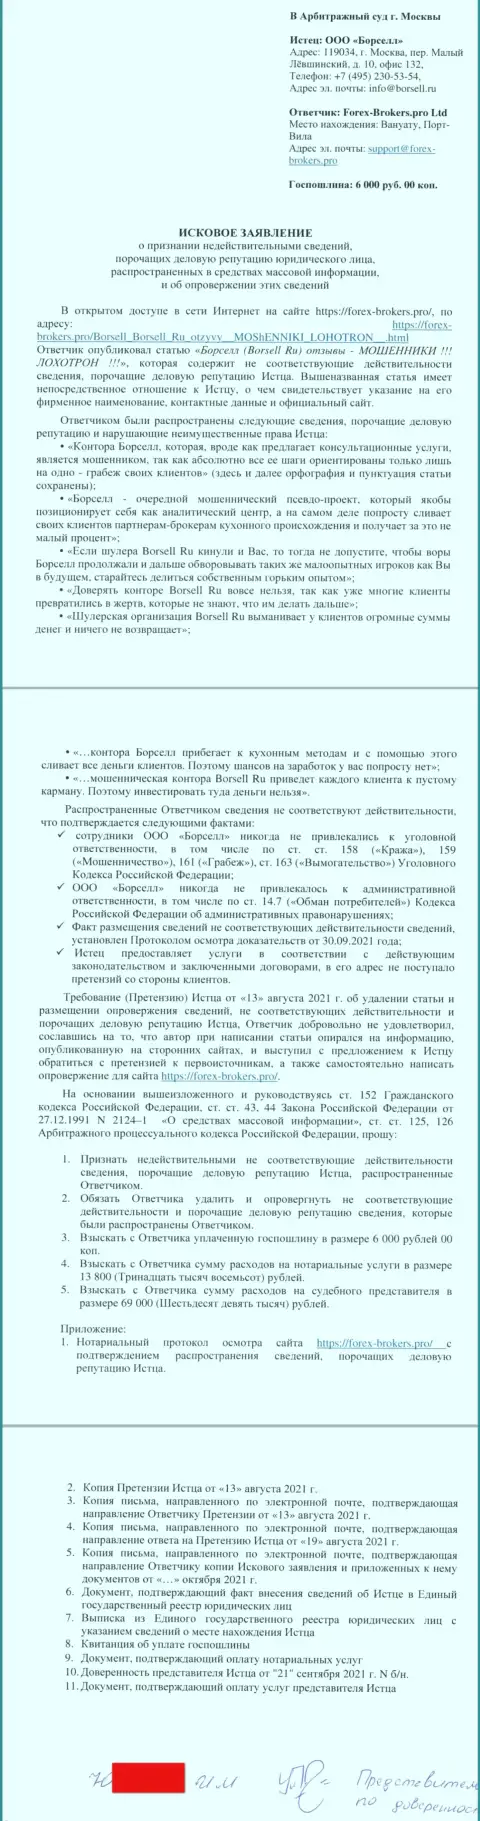 Непосредственно заявление в суд махинаторов Borsell Ru